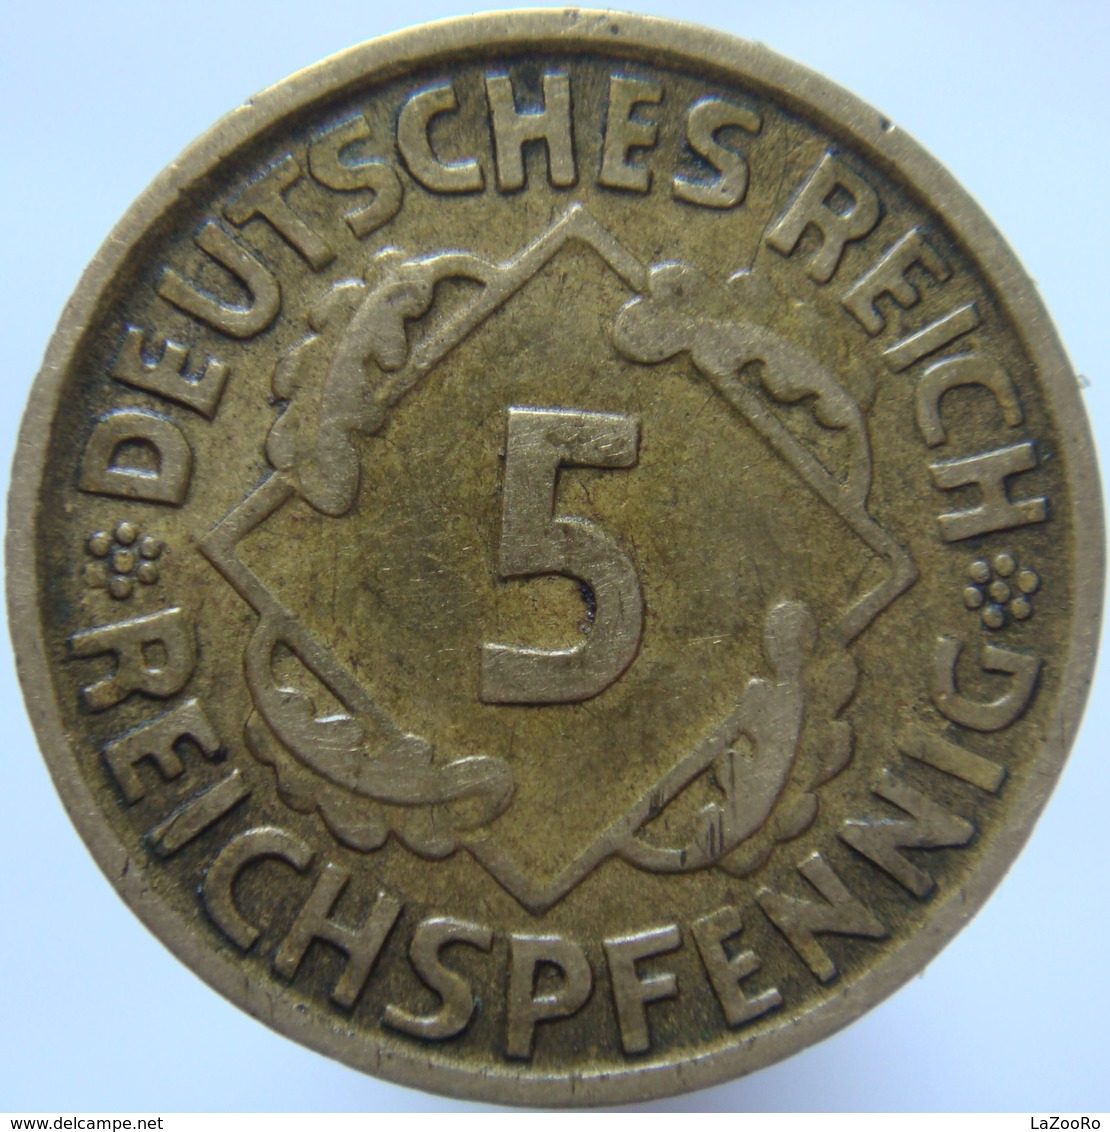 LaZooRo: Germany 5 Pfennig 1925 D XF / UNC - 5 Rentenpfennig & 5 Reichspfennig